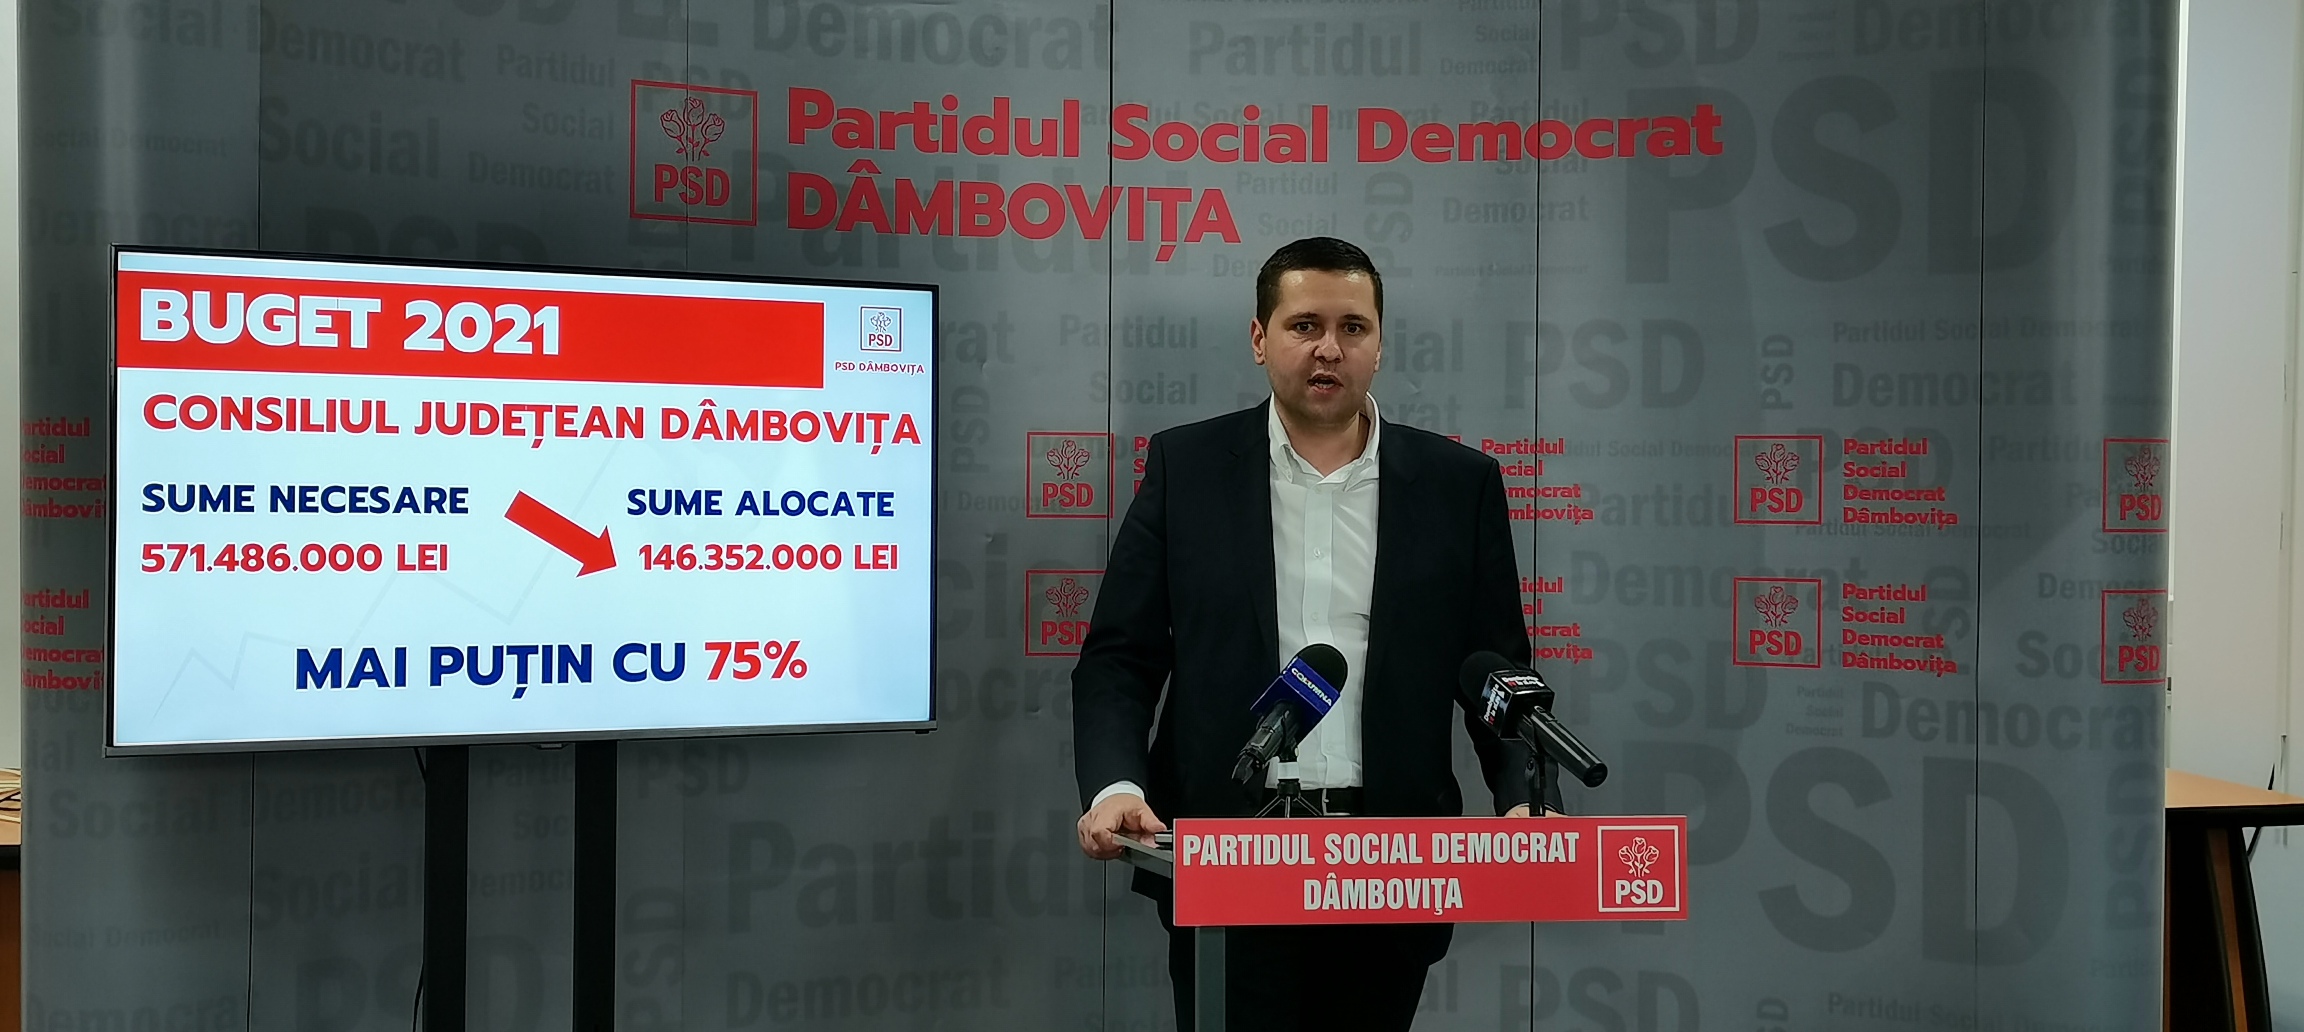 Dezastru! Dâmbovița va primi 25% din ceea ce a solicitat prin Legea bugetului. PSD a depus 11 amendamente, însă parlamentarii PNL și USR dorm „în cizme”, nu au votat niciuna dintre solicitări